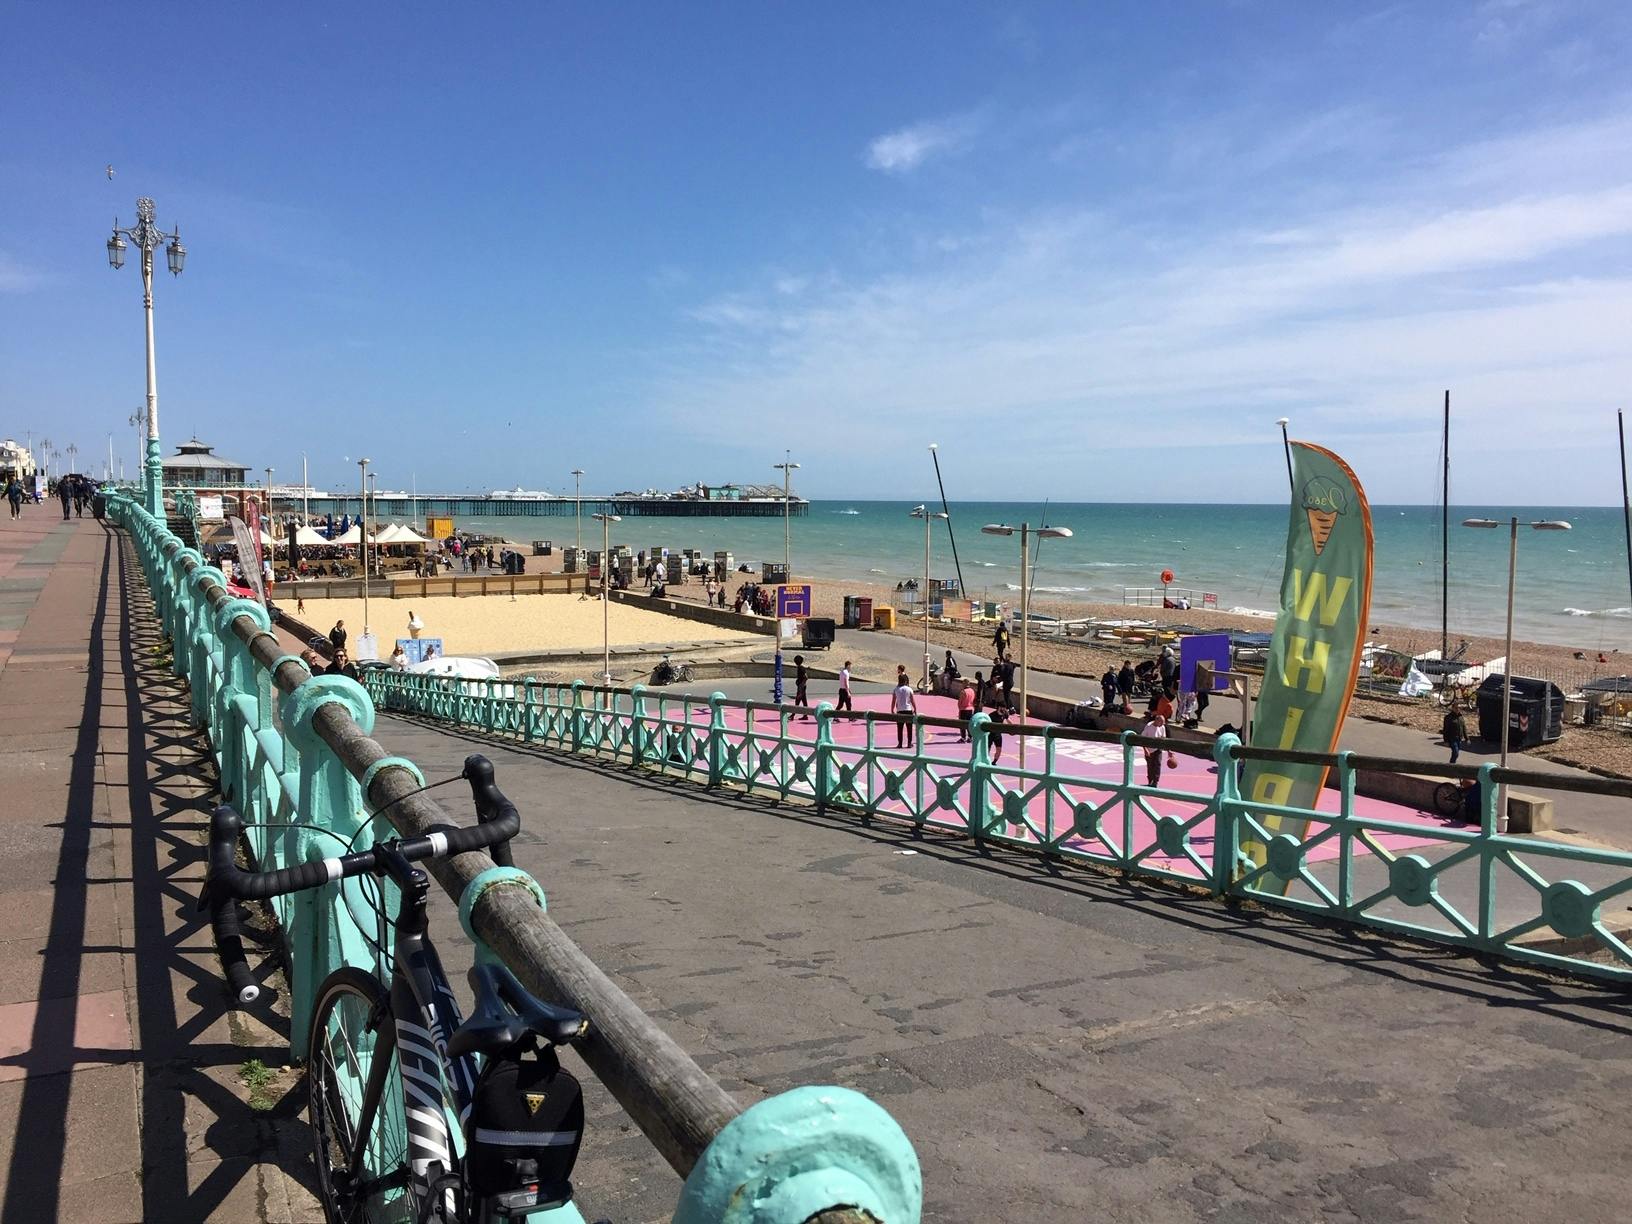 Zwiedzaj atrakcje Brighton dzięki aplikacji mobilnej do eksploracji